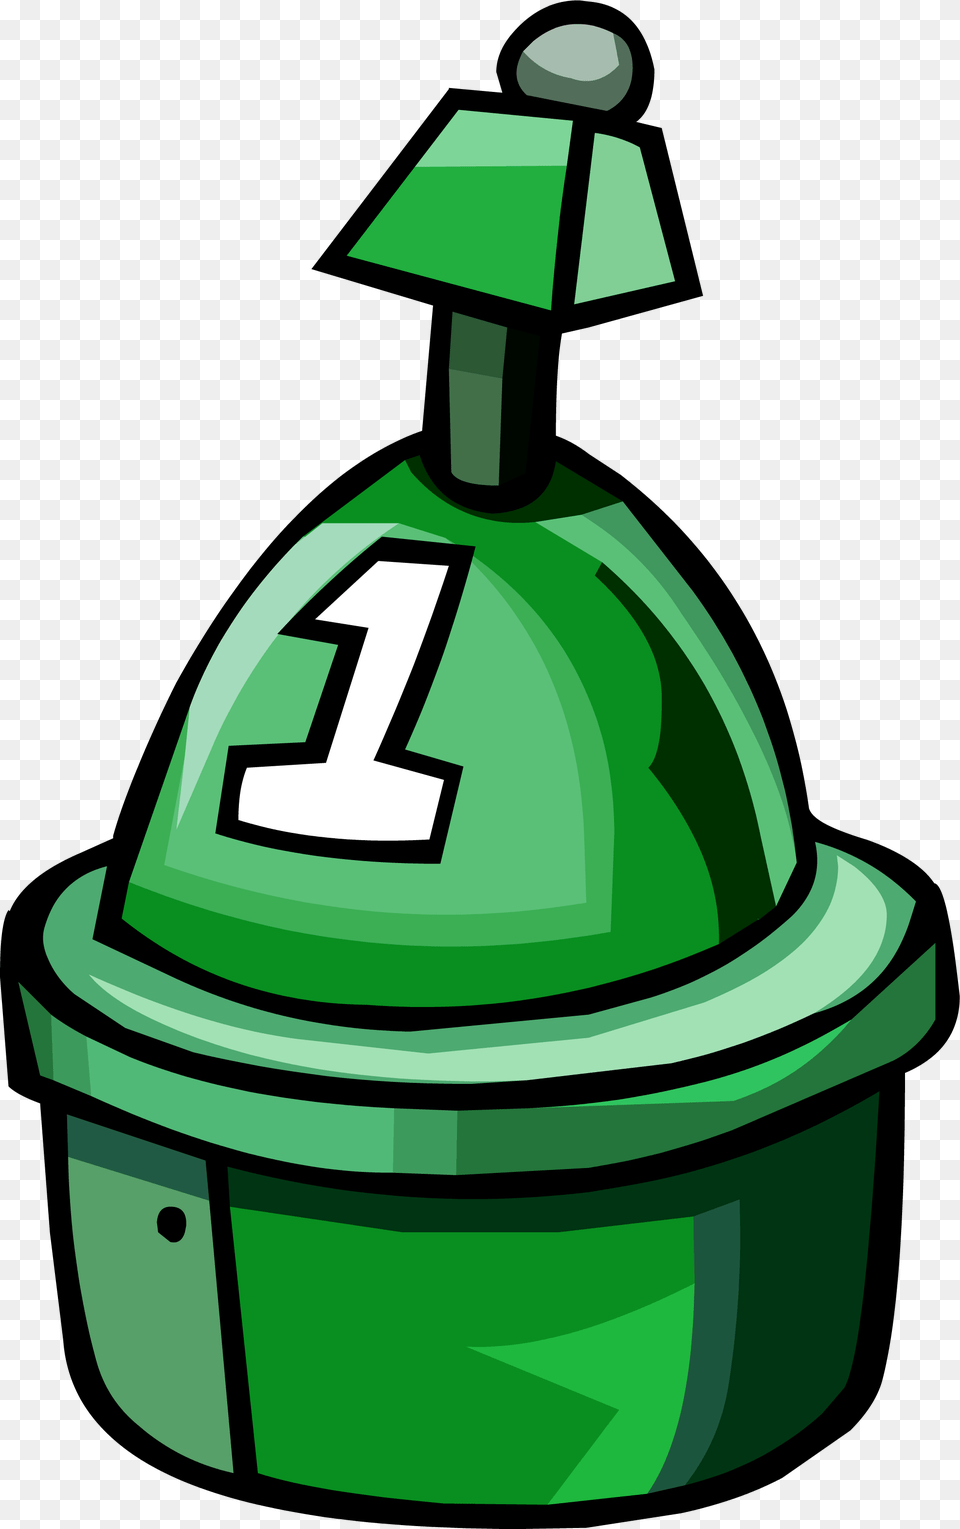 Club Penguin Buoy, Green, Helmet, Recycling Symbol, Symbol Free Transparent Png